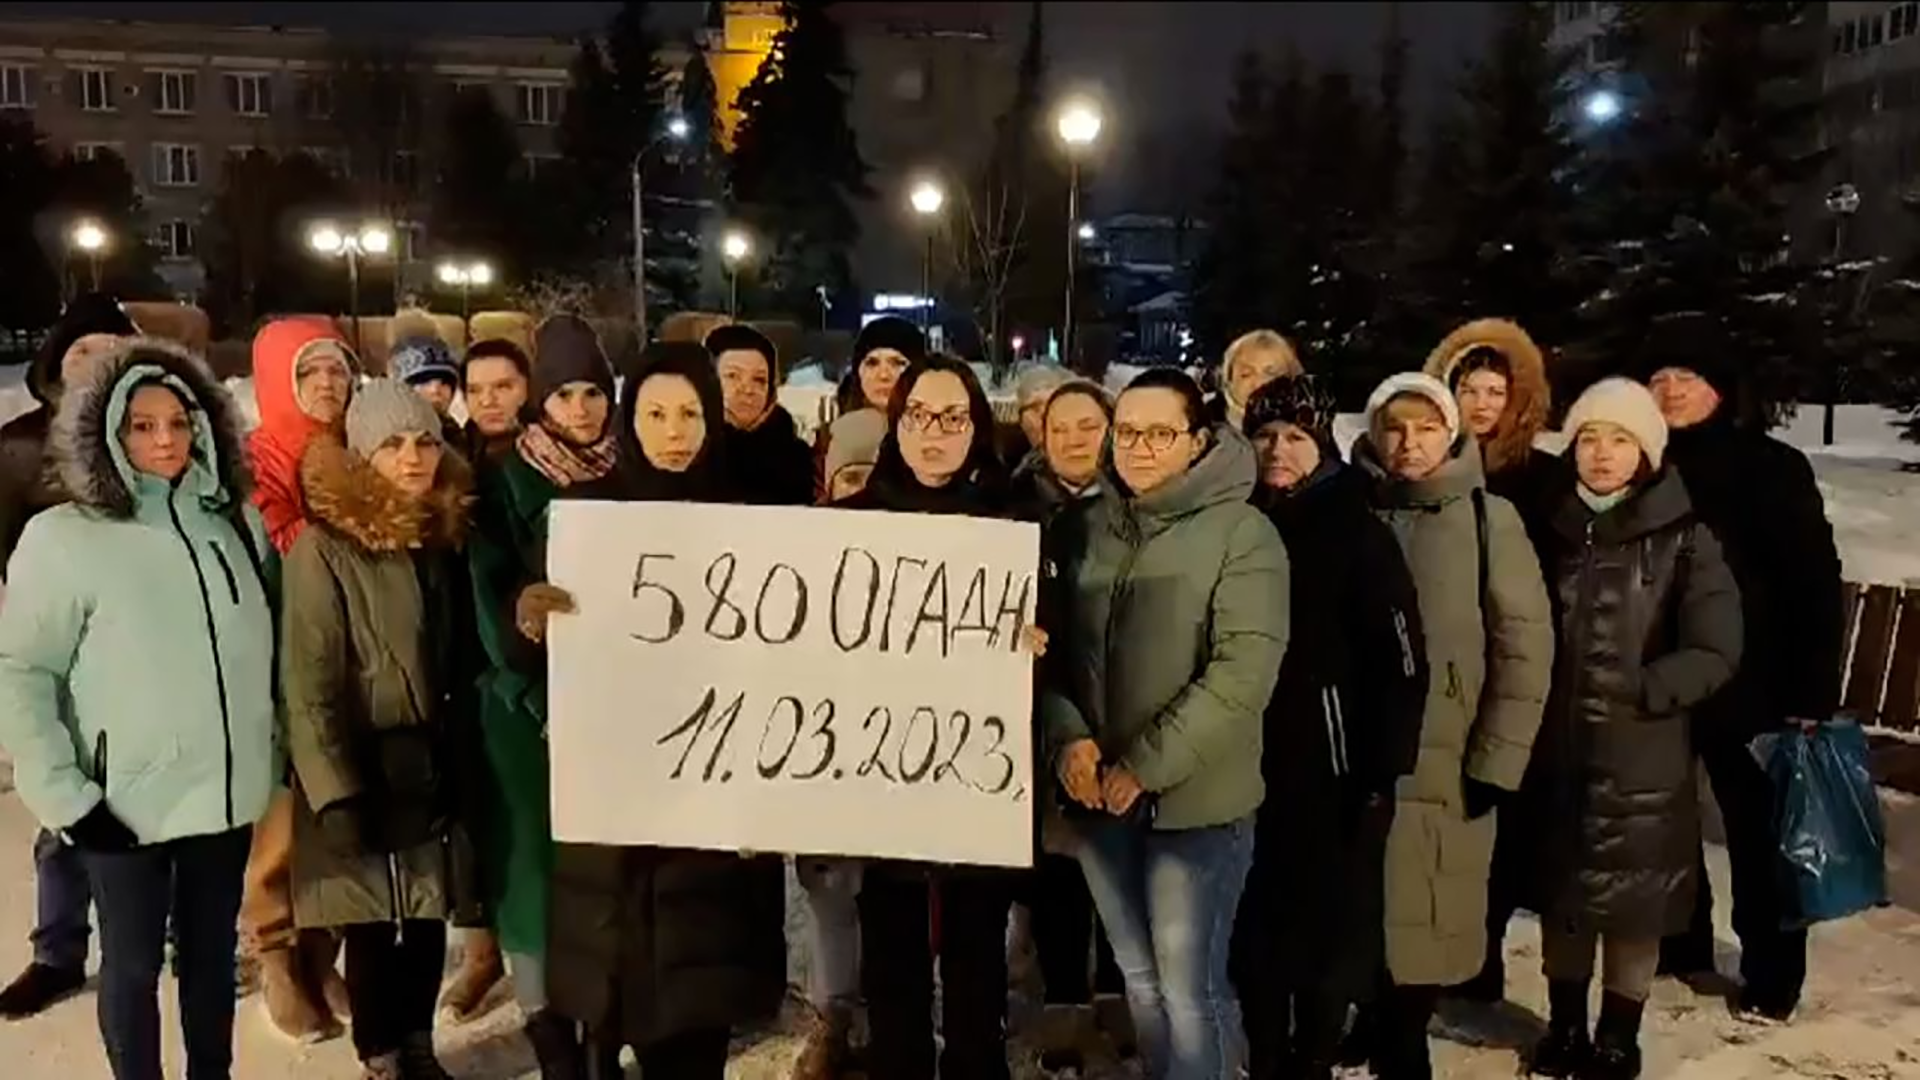 Esposas y madres de soldados se manifiestan contra Putin: en el cártel se lee”División 580 de la Artillería Howitzer” y la fecha 11 de marzo de 2023.